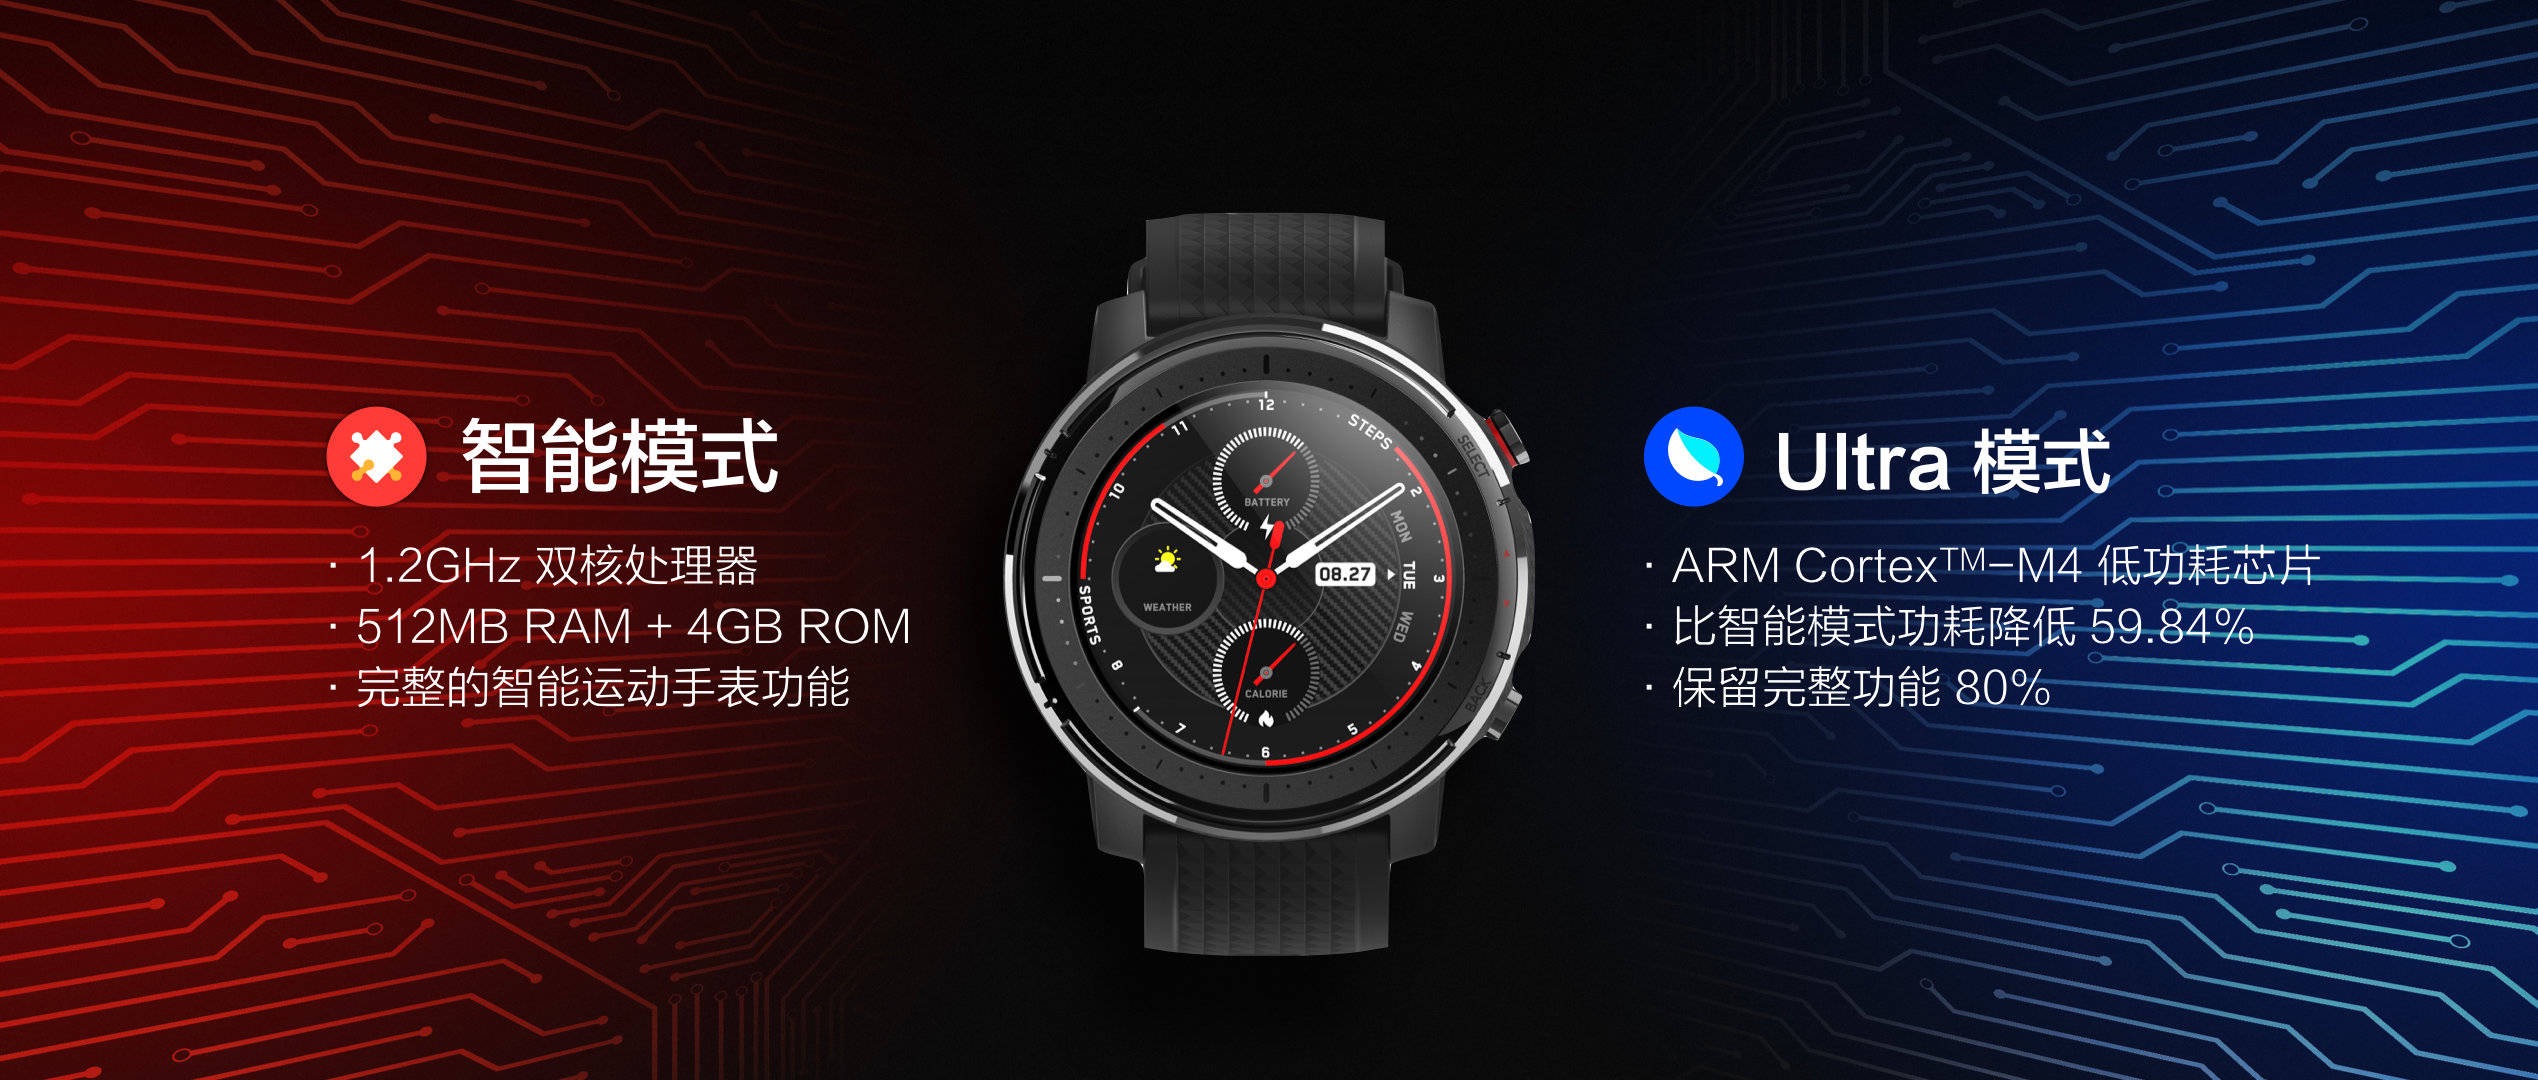 Đồng hồ thể thao thông minh Amazfit 3, đặc điểm, giá cả và thông số kỹ thuật. Tin tức mới nhất của Xiaomi